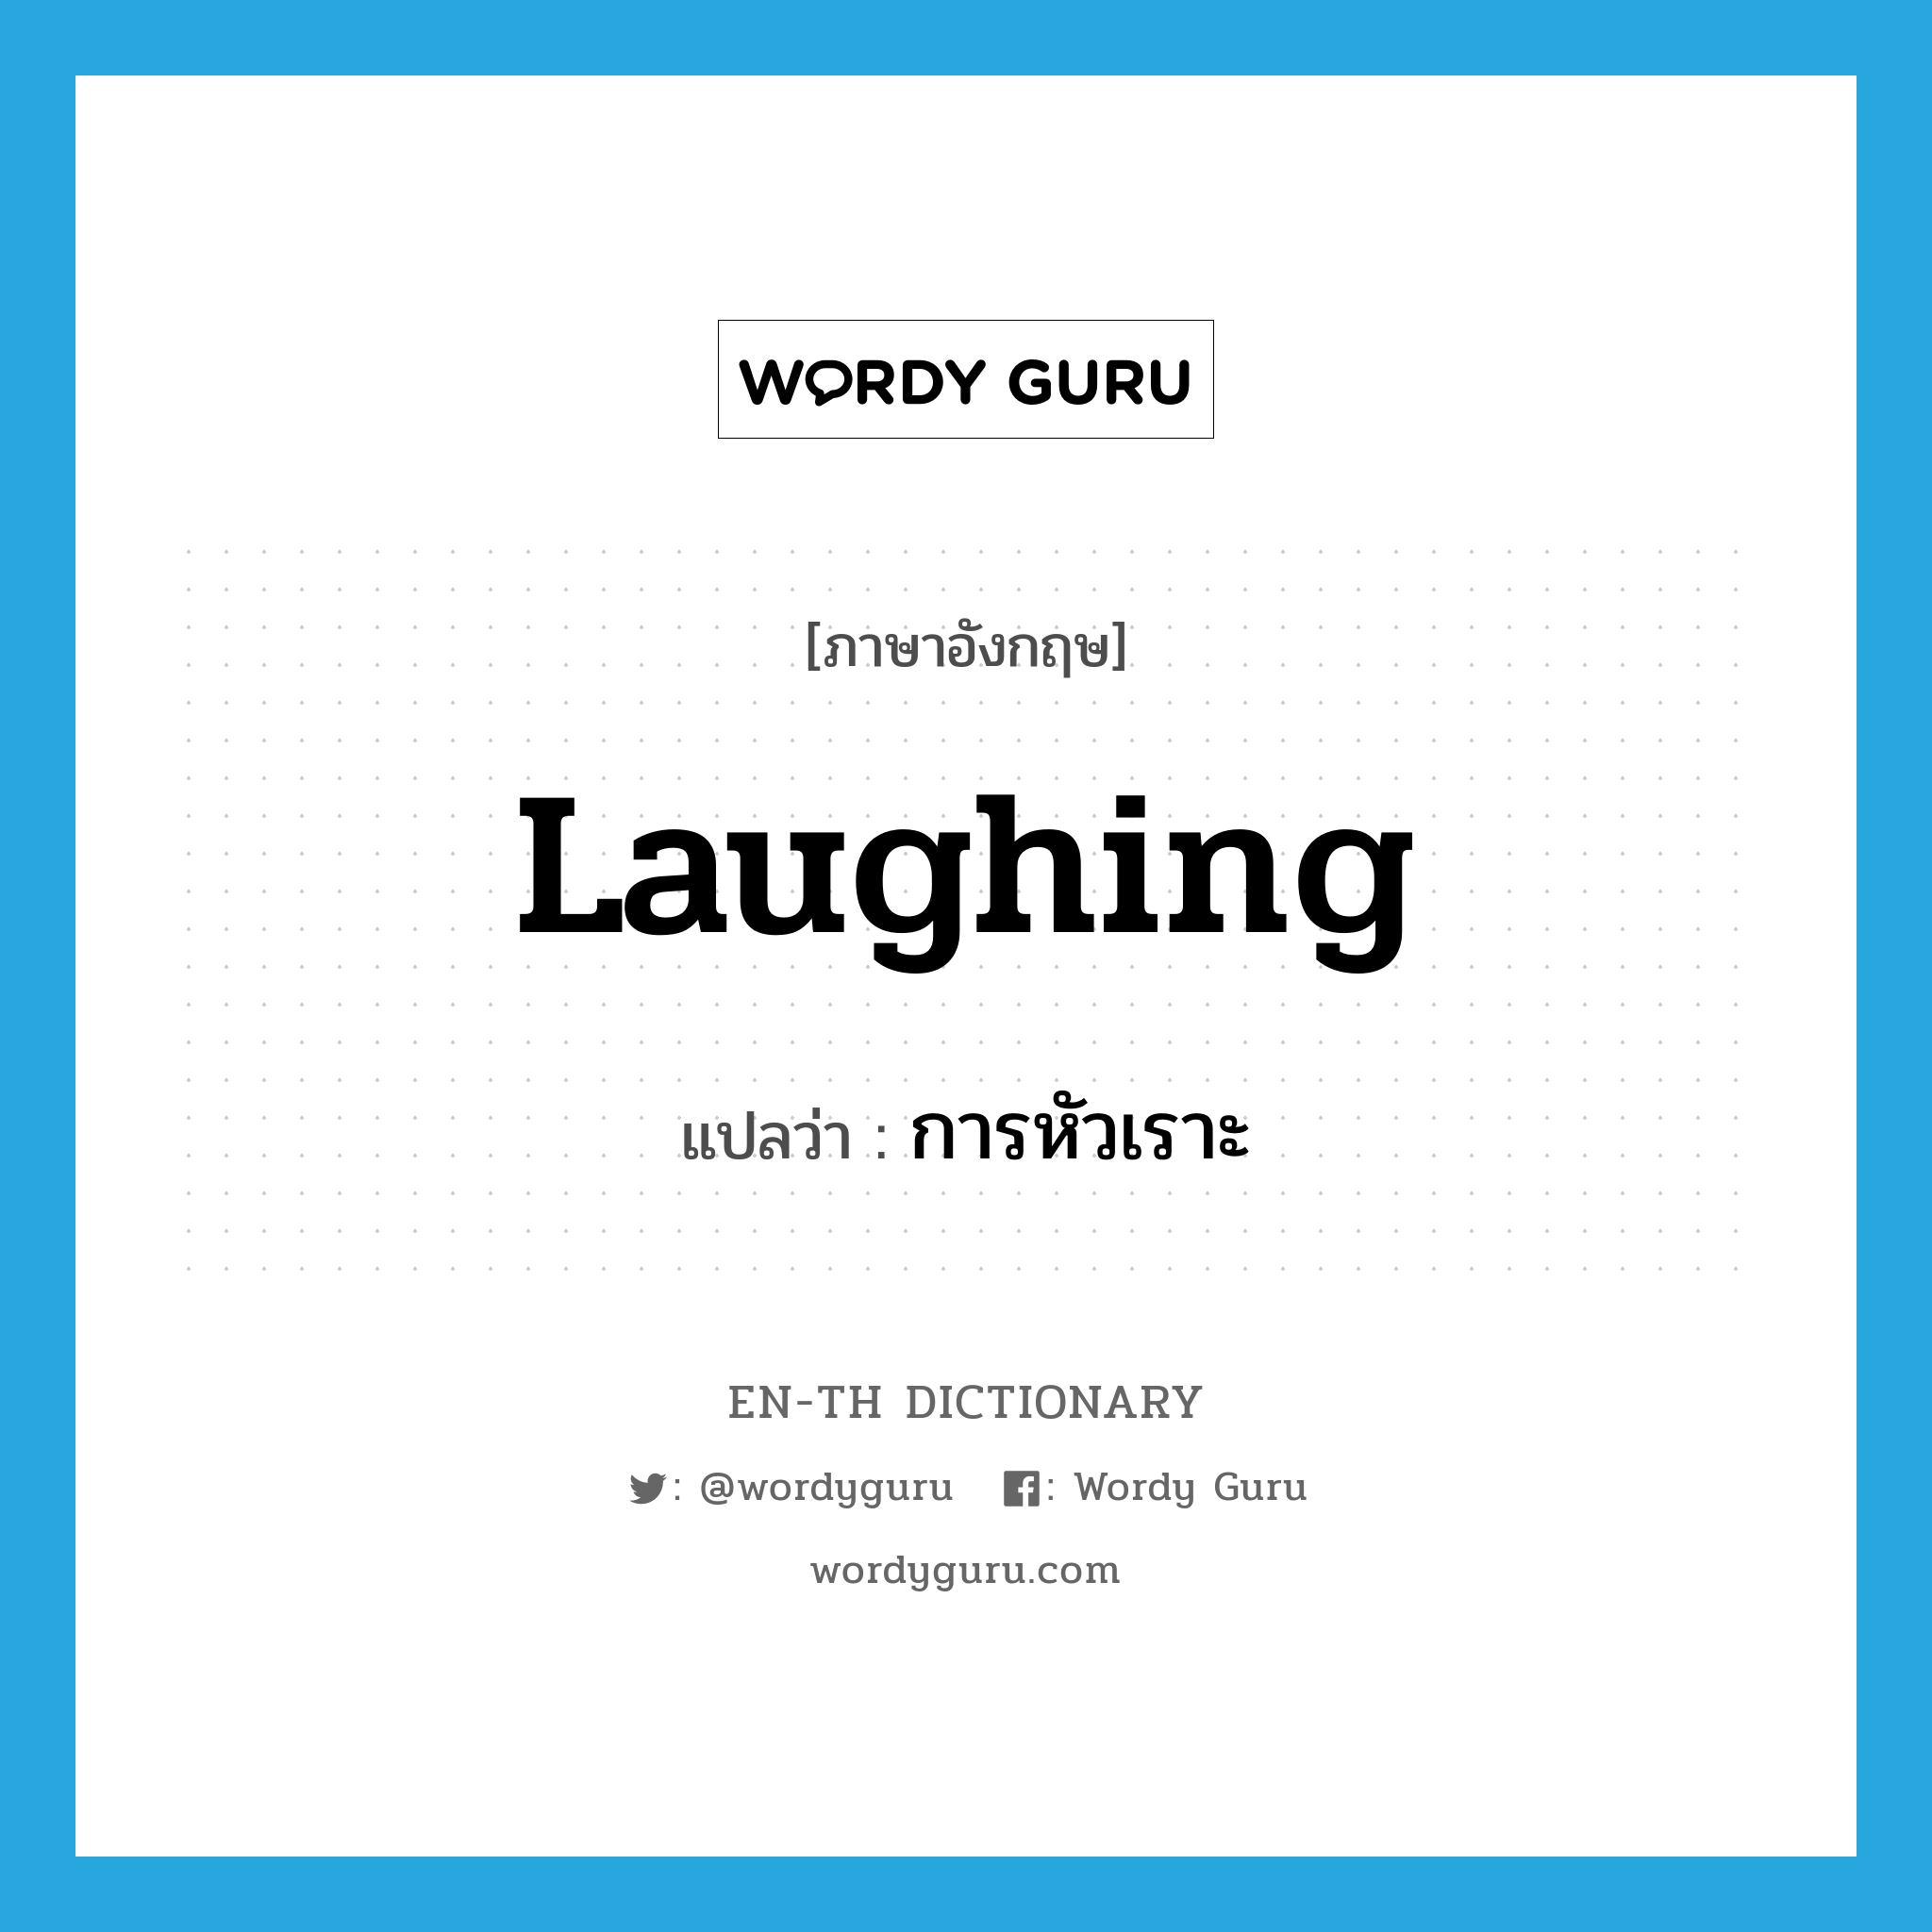 การหัวเราะ ภาษาอังกฤษ?, คำศัพท์ภาษาอังกฤษ การหัวเราะ แปลว่า laughing ประเภท N หมวด N